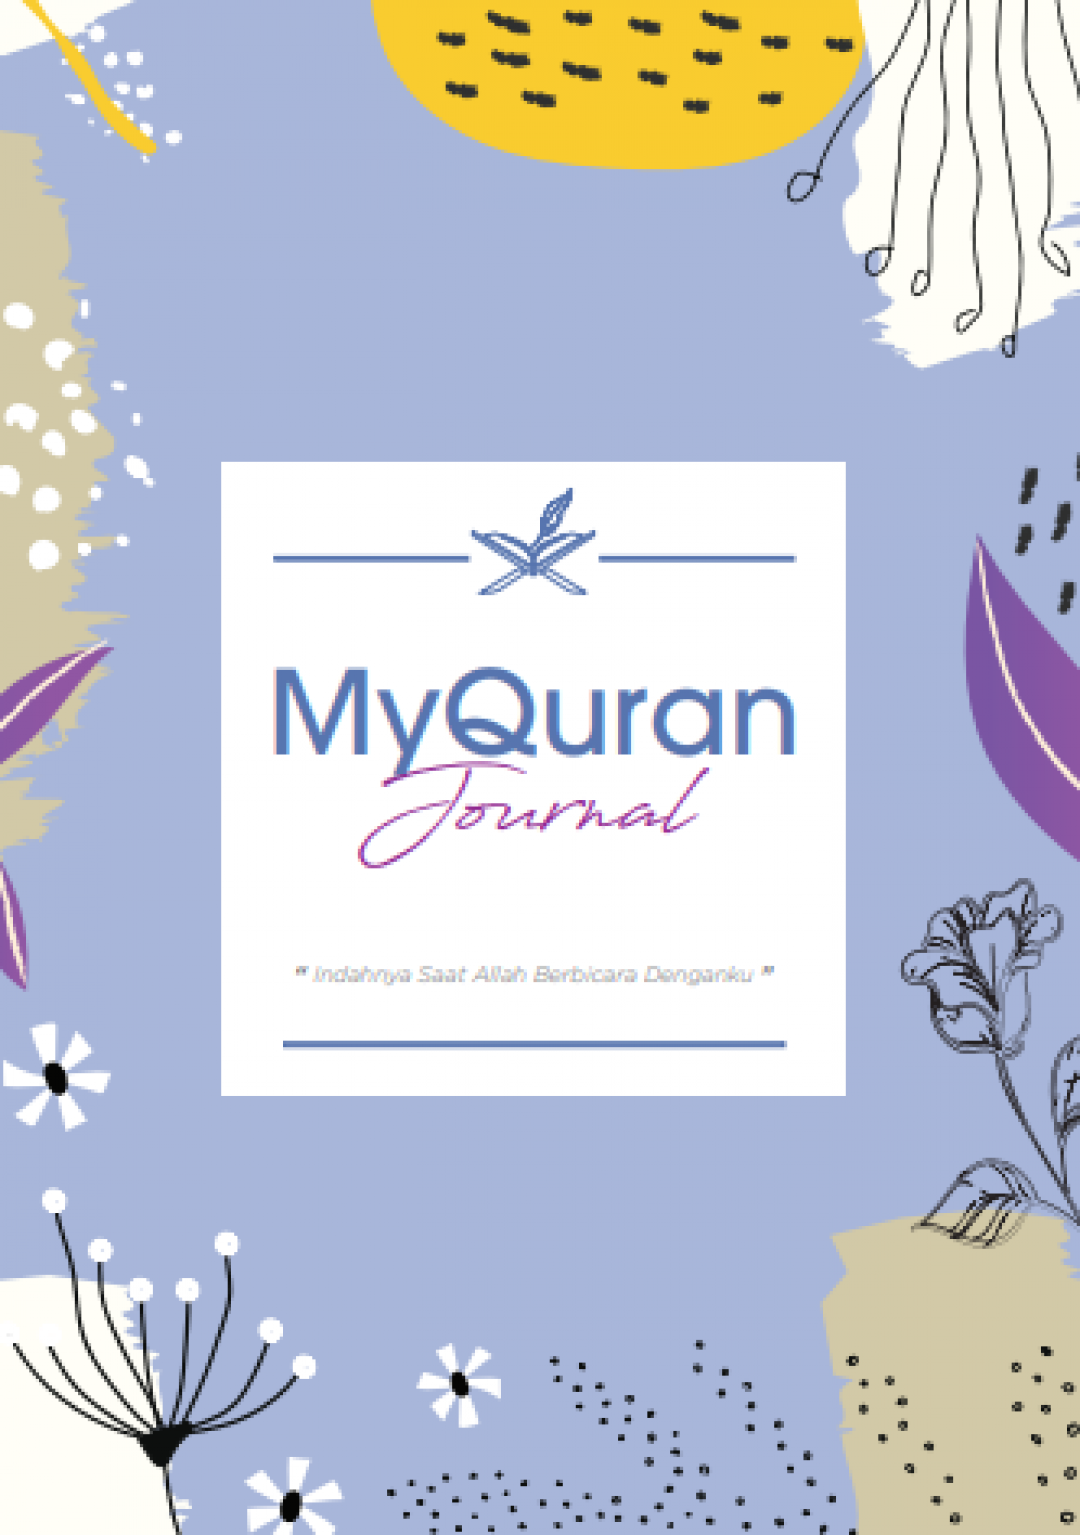 MyQuran Journal